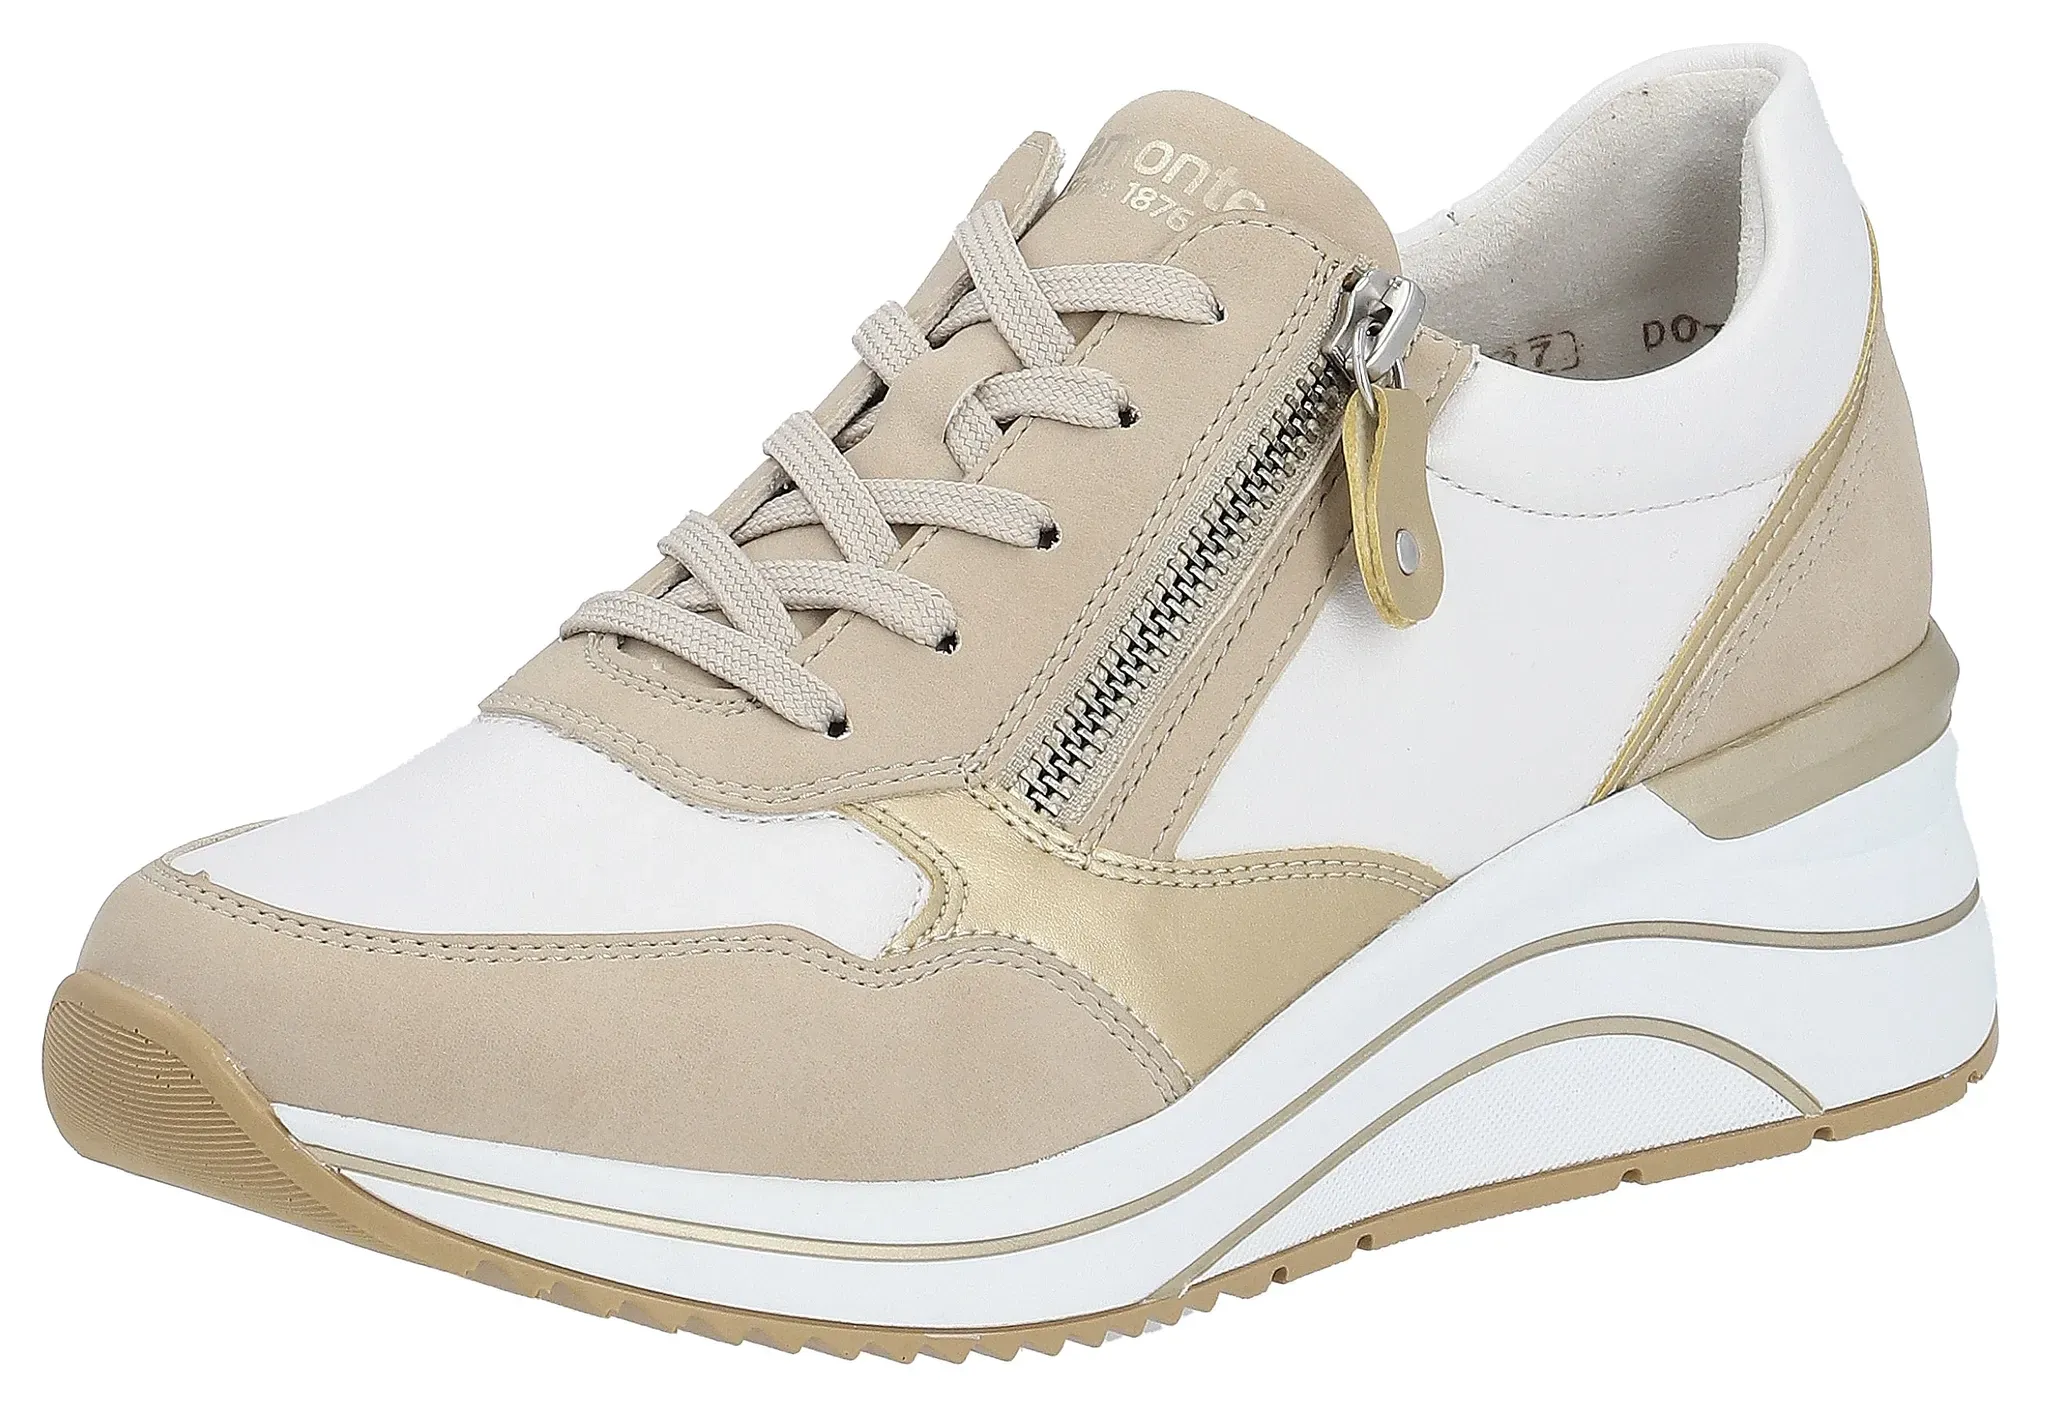 Keilsneaker REMONTE Gr. 42, beige (beige, kombiniert) Damen Schuhe Sneaker